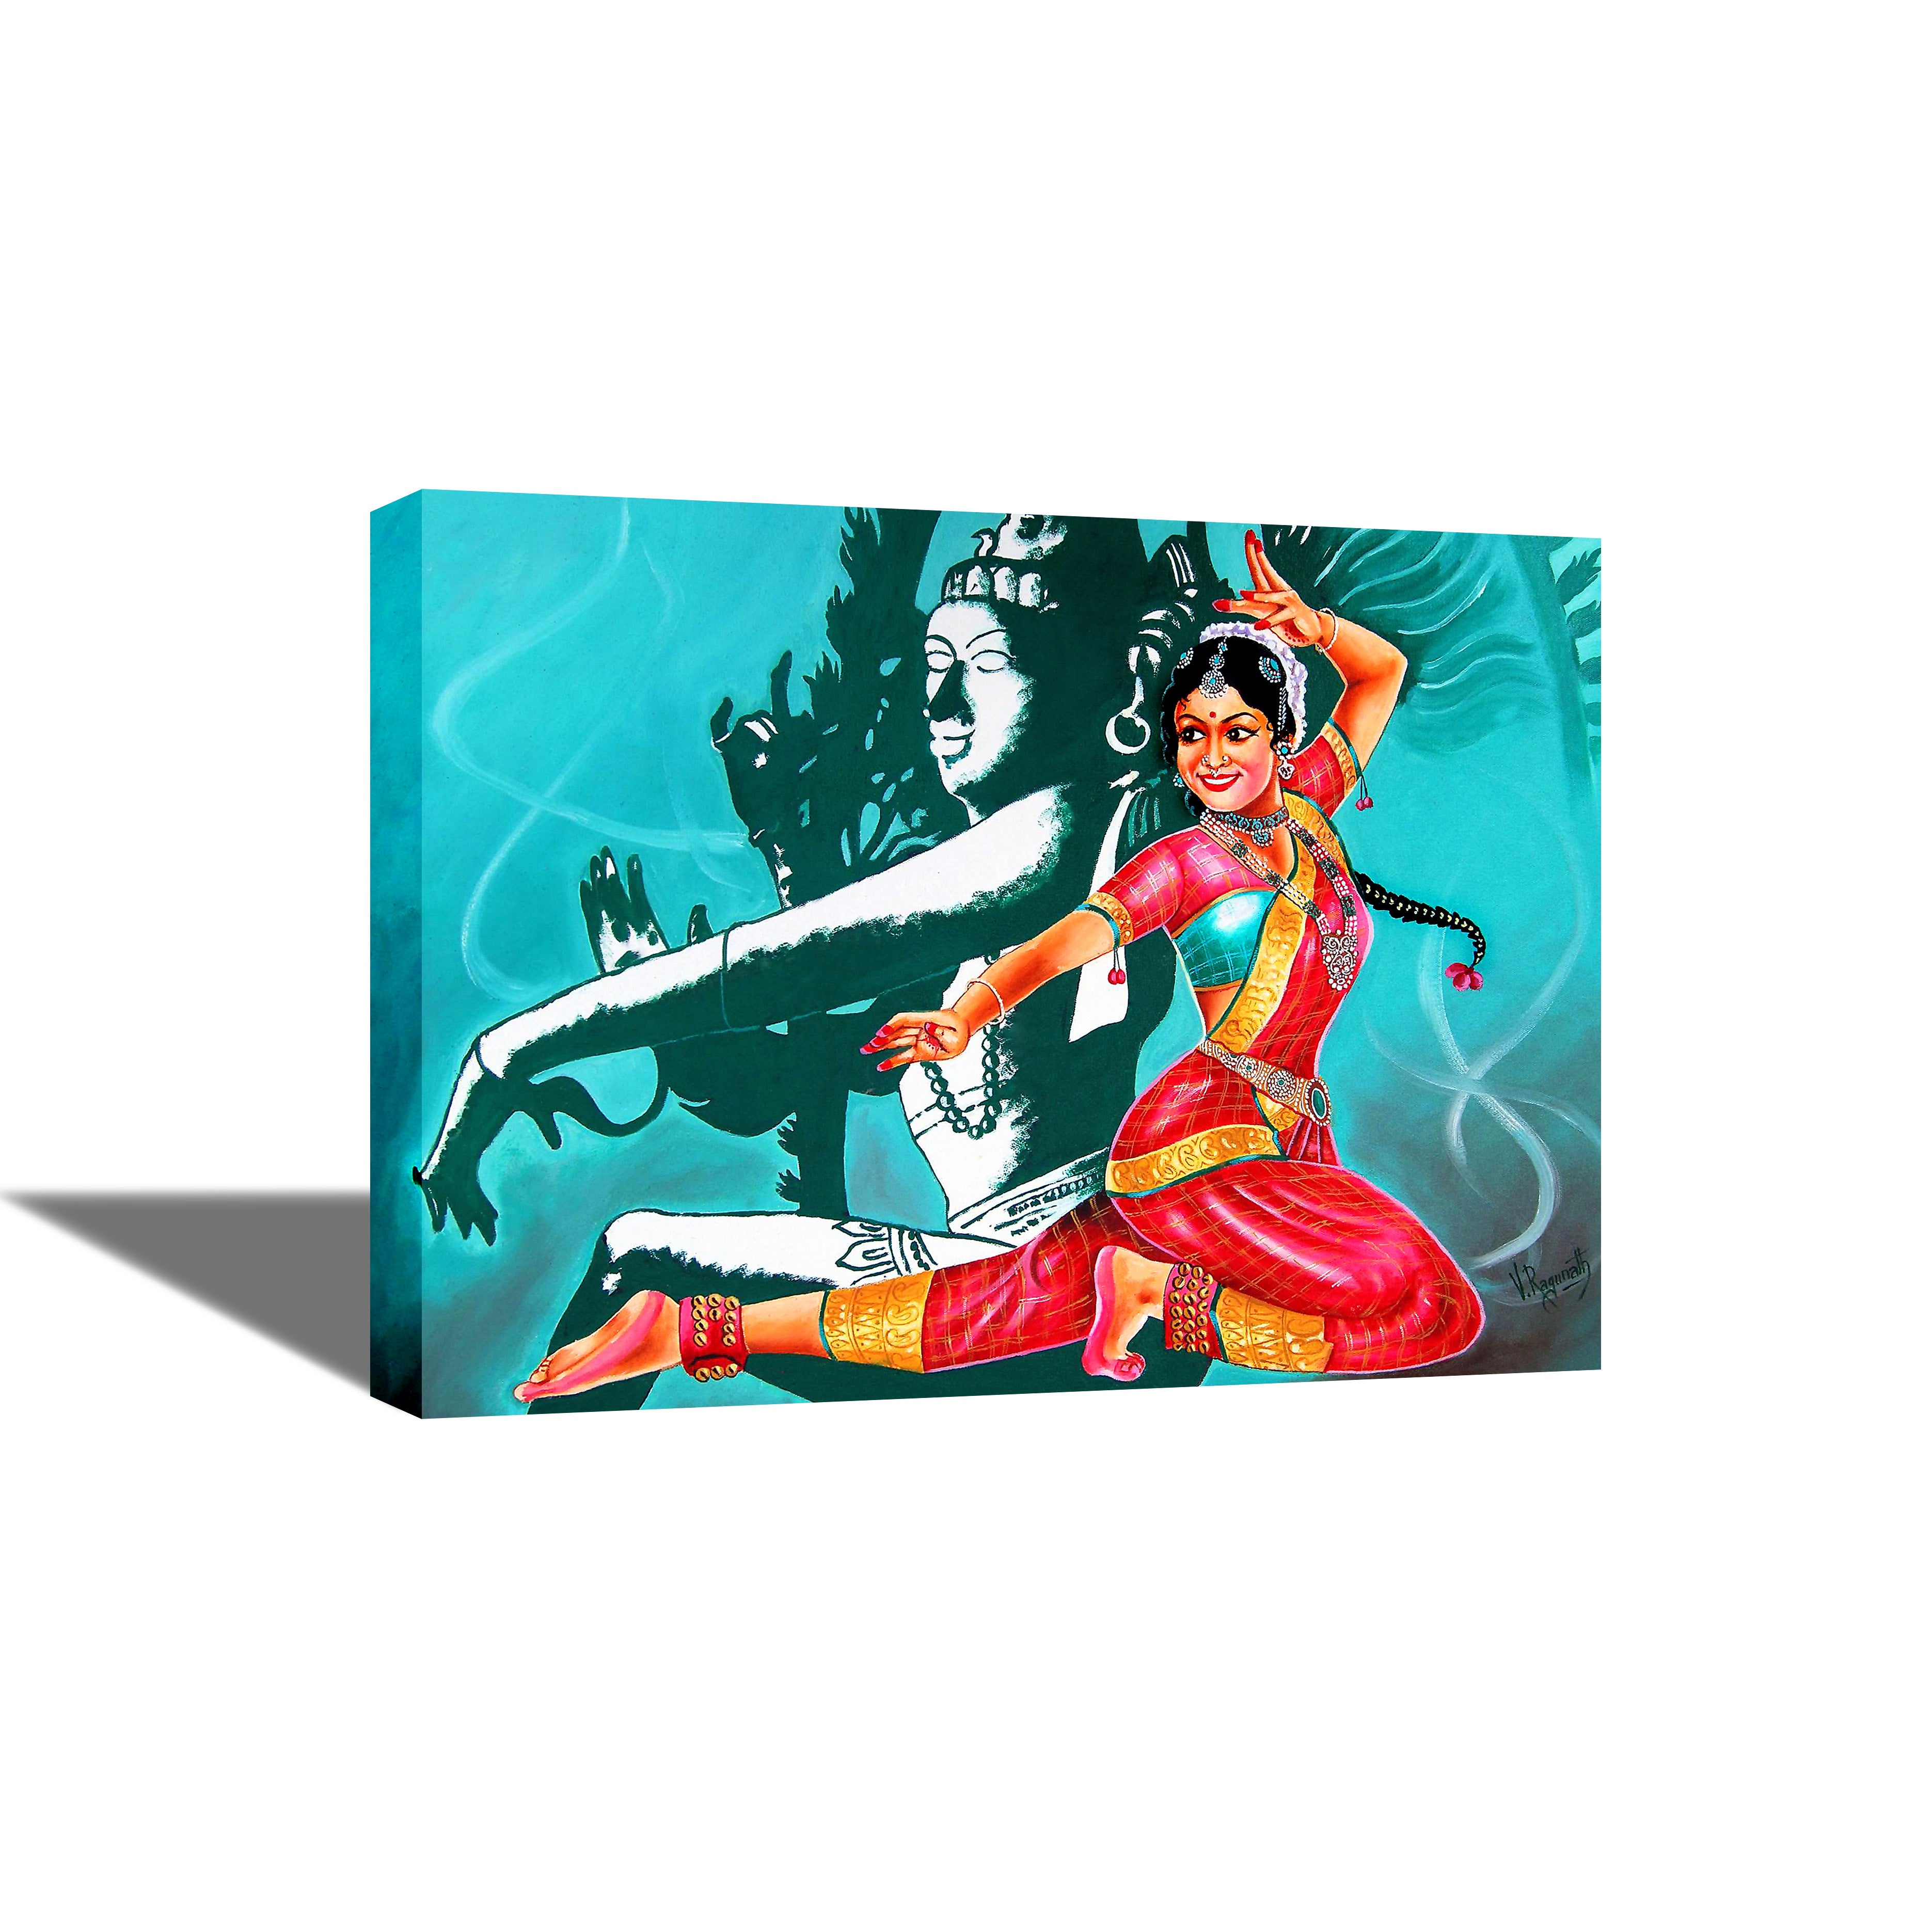 Natraja - Lord Shiva